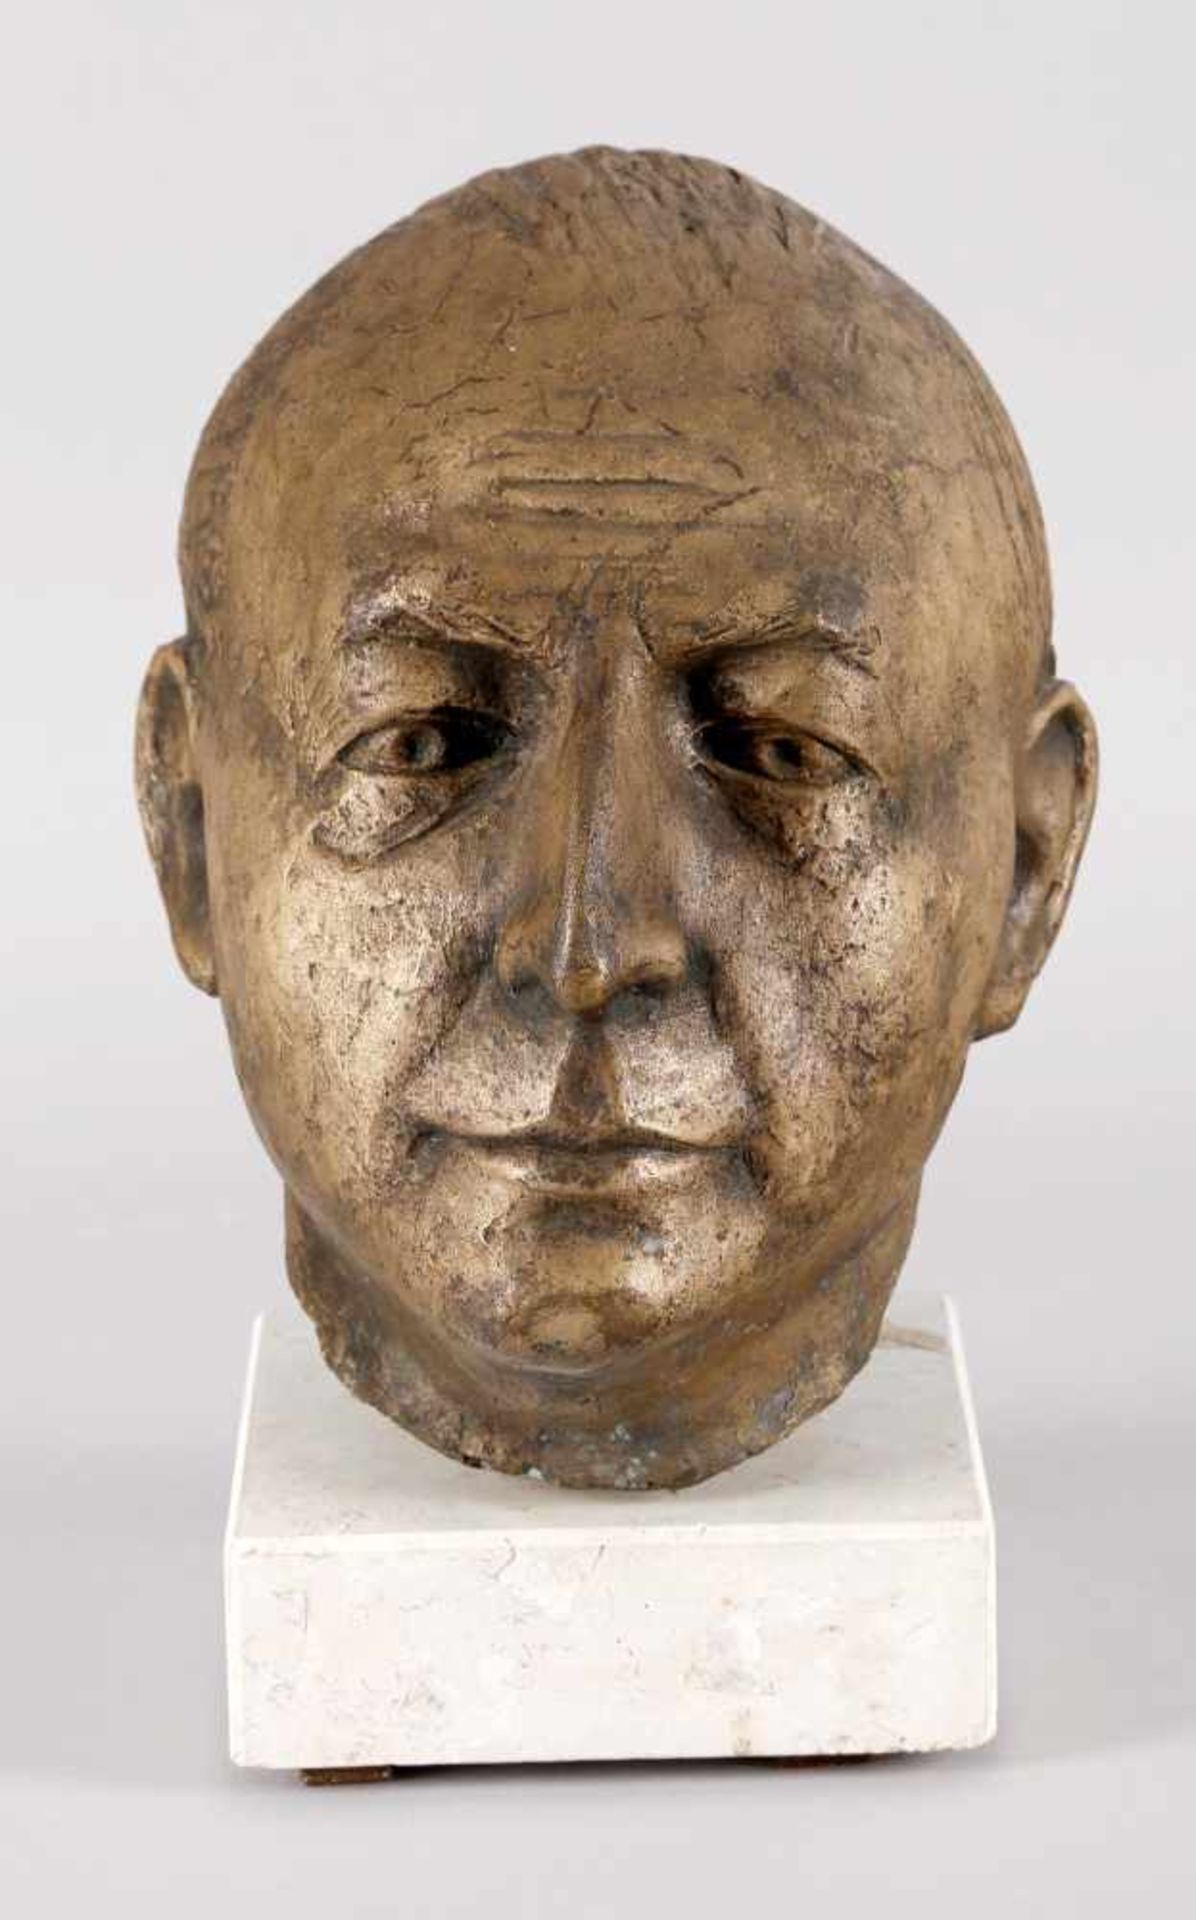 Porträtkopf eines Mannes aus Bronze, Mitte 20. Jh.braun-goldfarbene Patina, Überlebensgröße auf